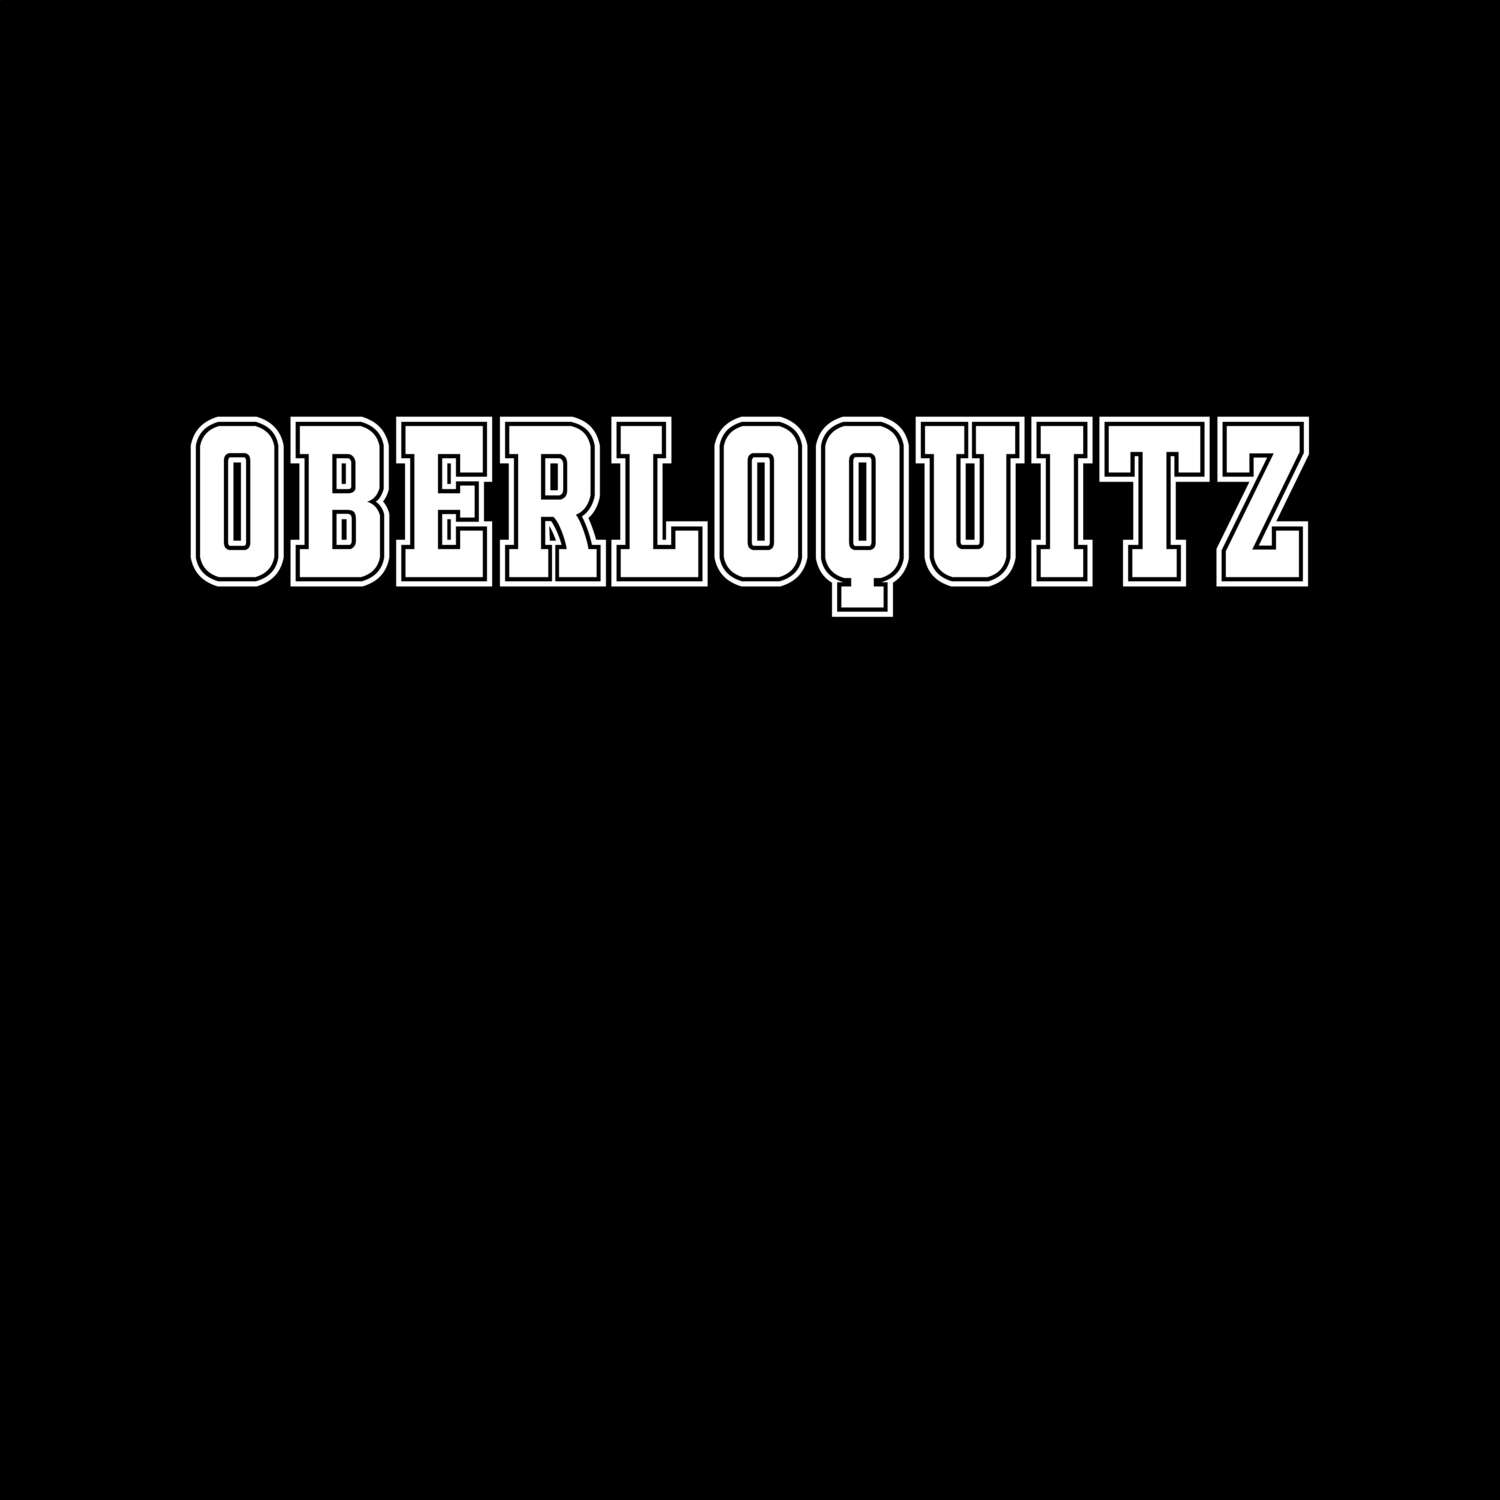 Oberloquitz T-Shirt »Classic«